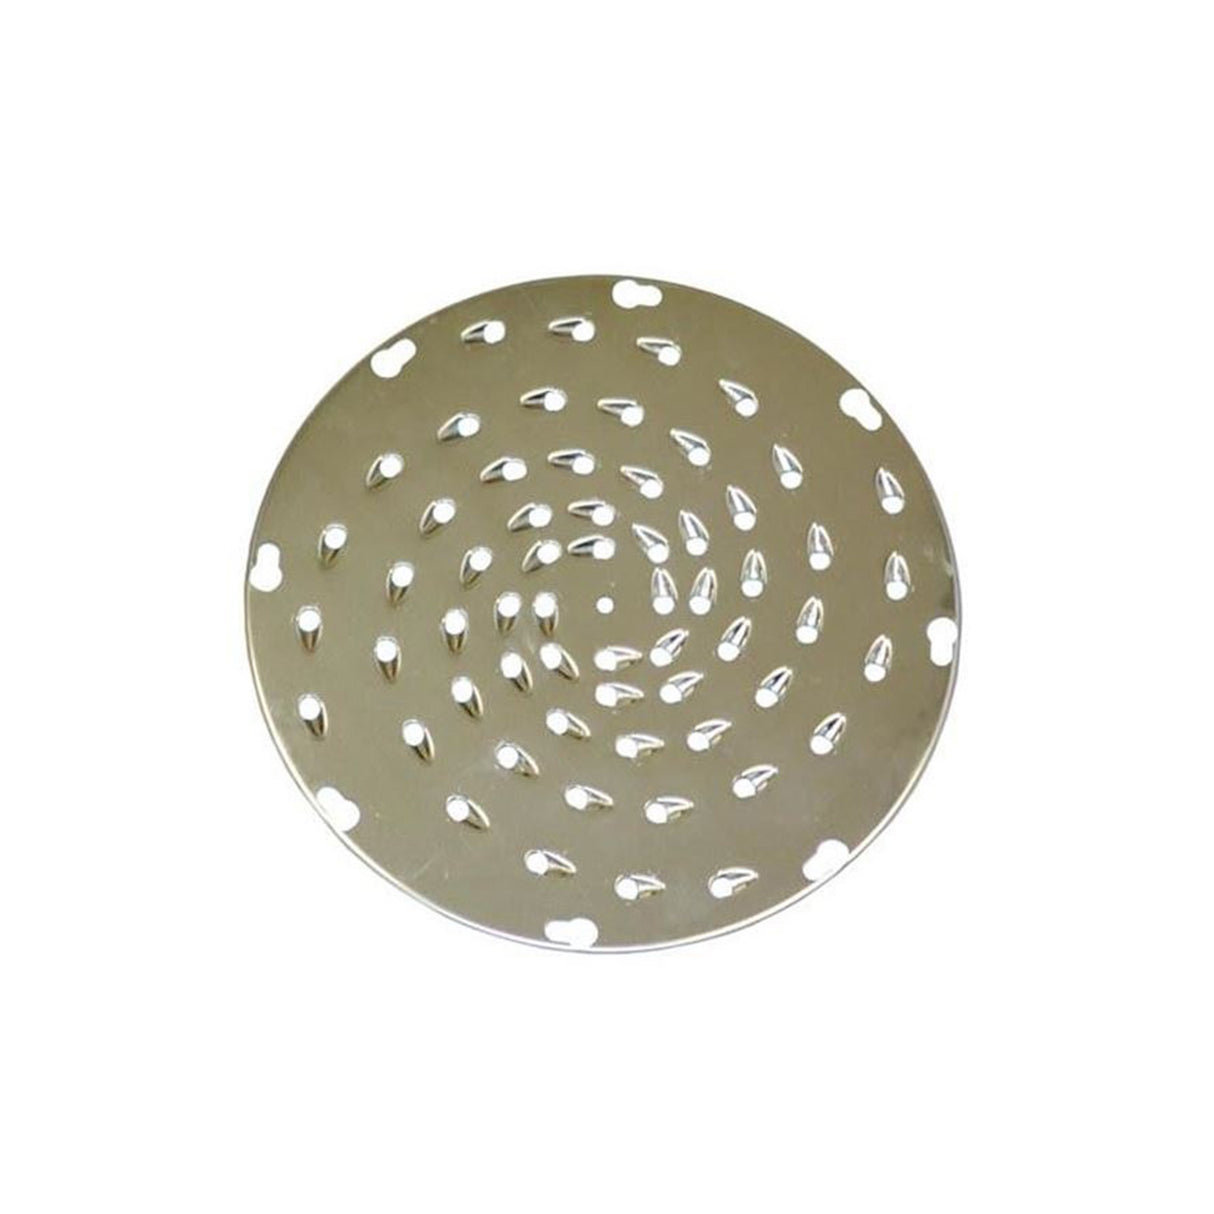 UVS-9516 | S/Steel Shredder Disc, 5/16" Holes